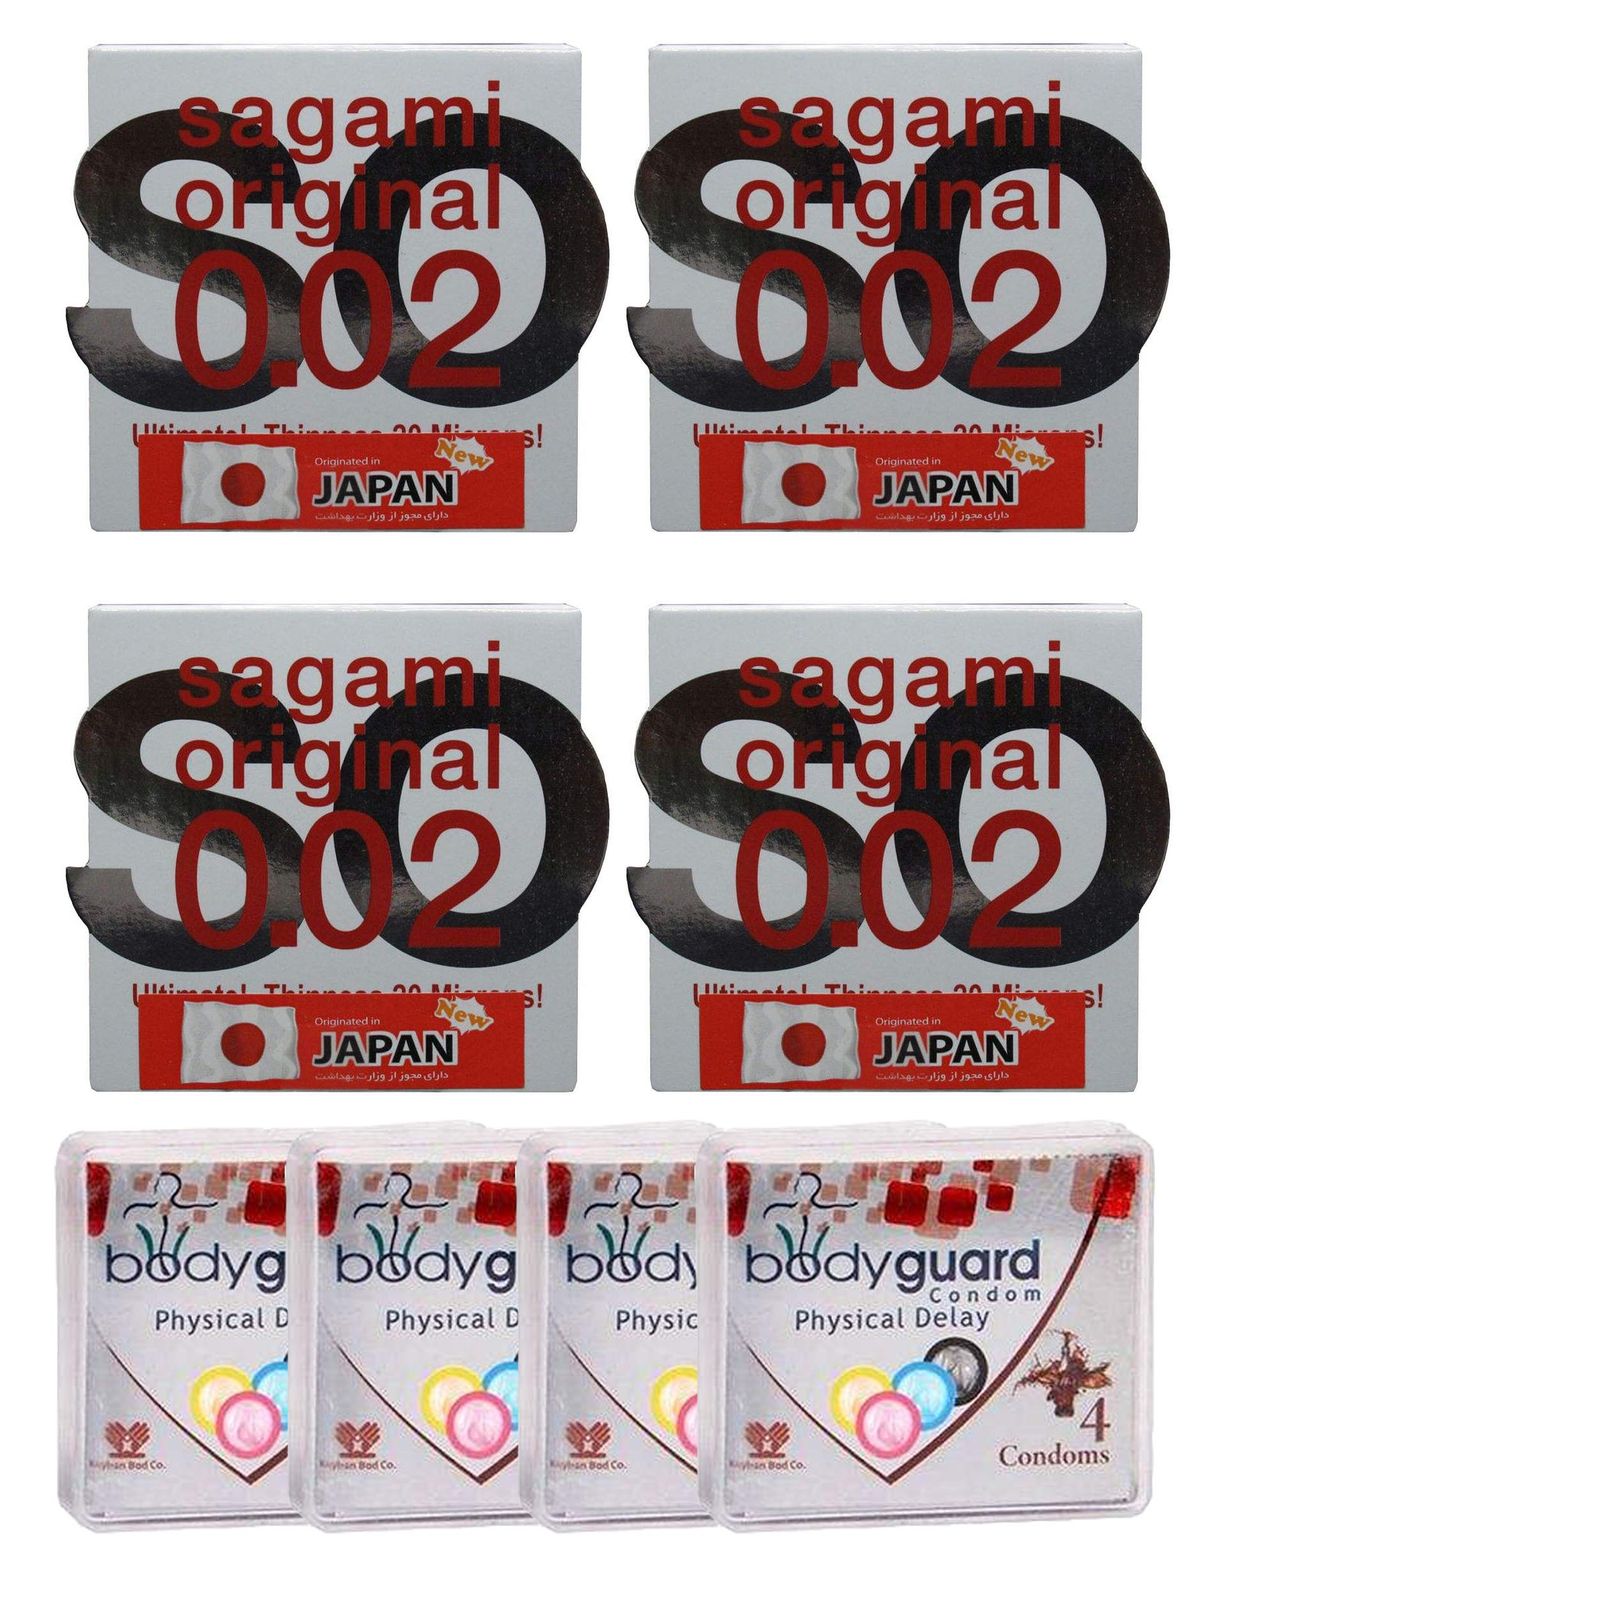 کاندوم ساگامی مدل نرمال مجموعه 4 عددی به همراه کاندوم بادی گارد مدل Delay مجموعه 4 عددی